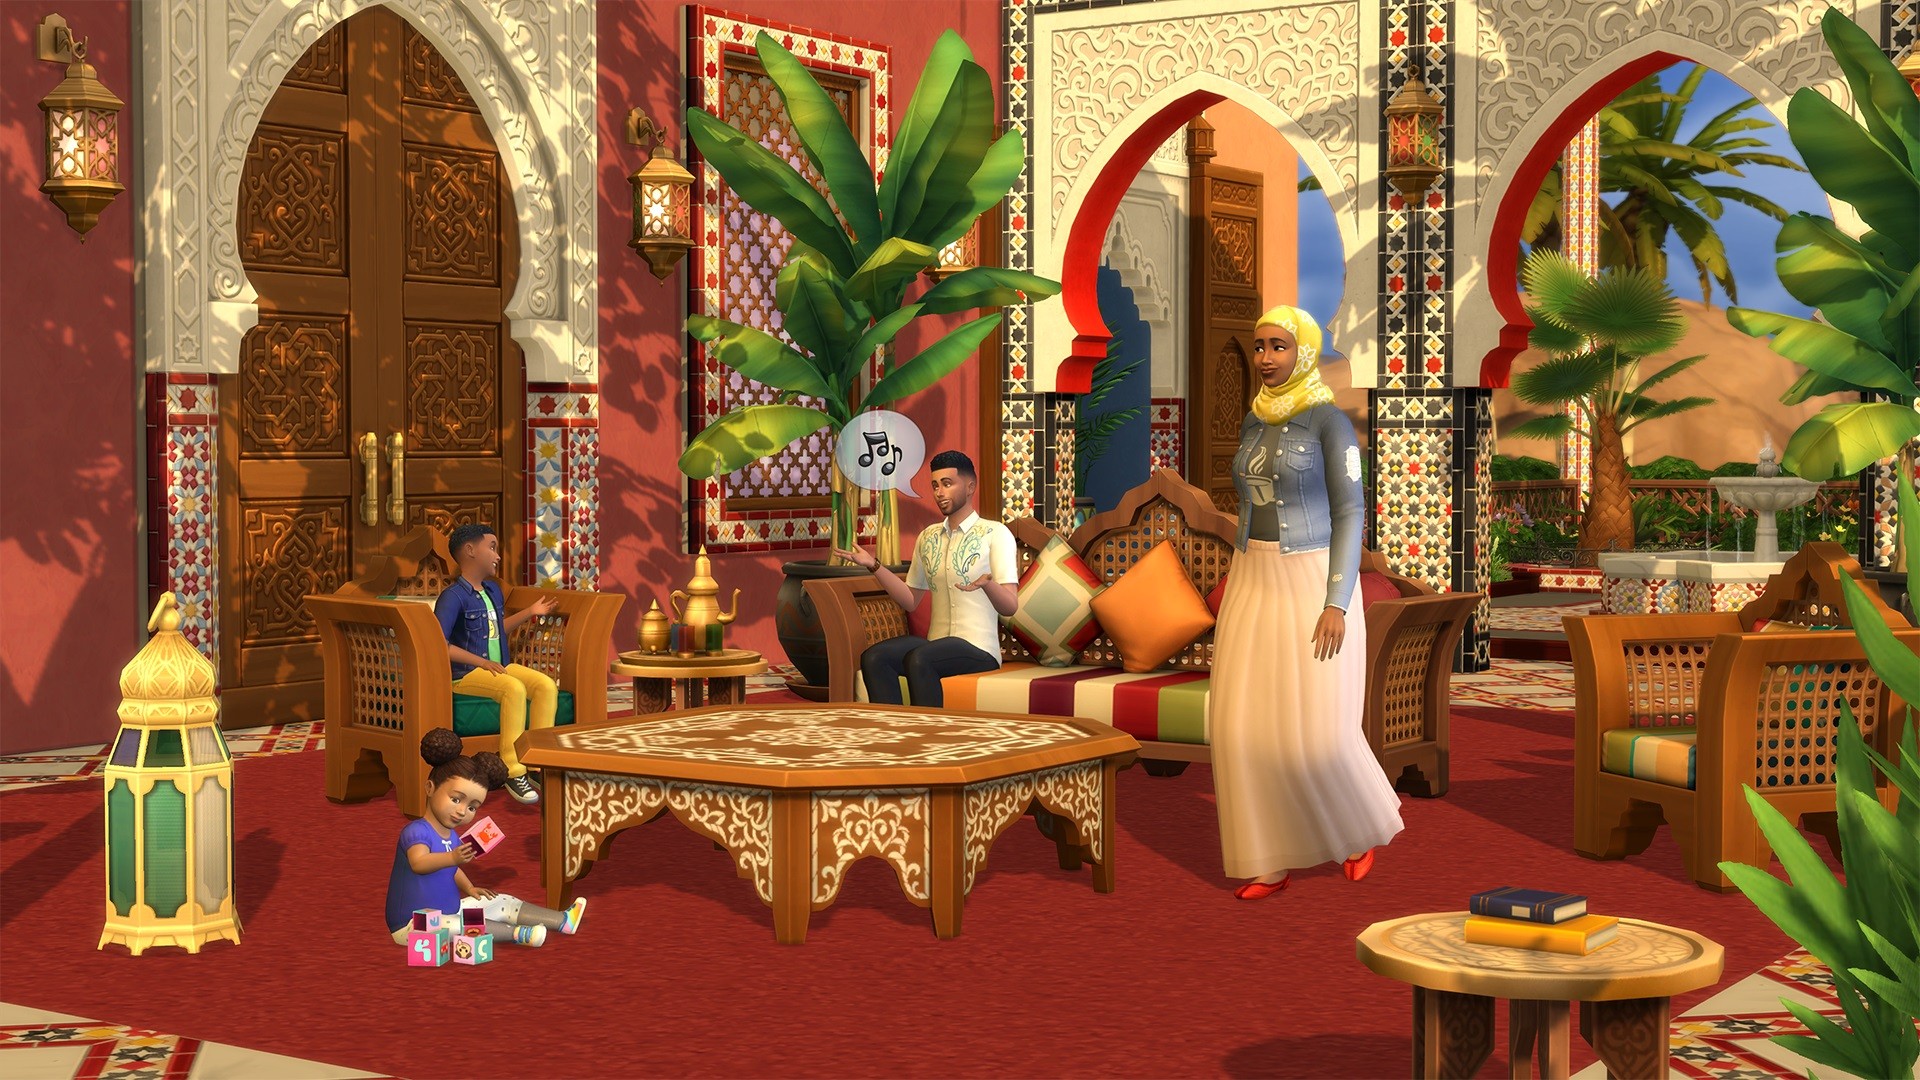 Co je nového ve světě The Sims 4 - Stránka 11 Original